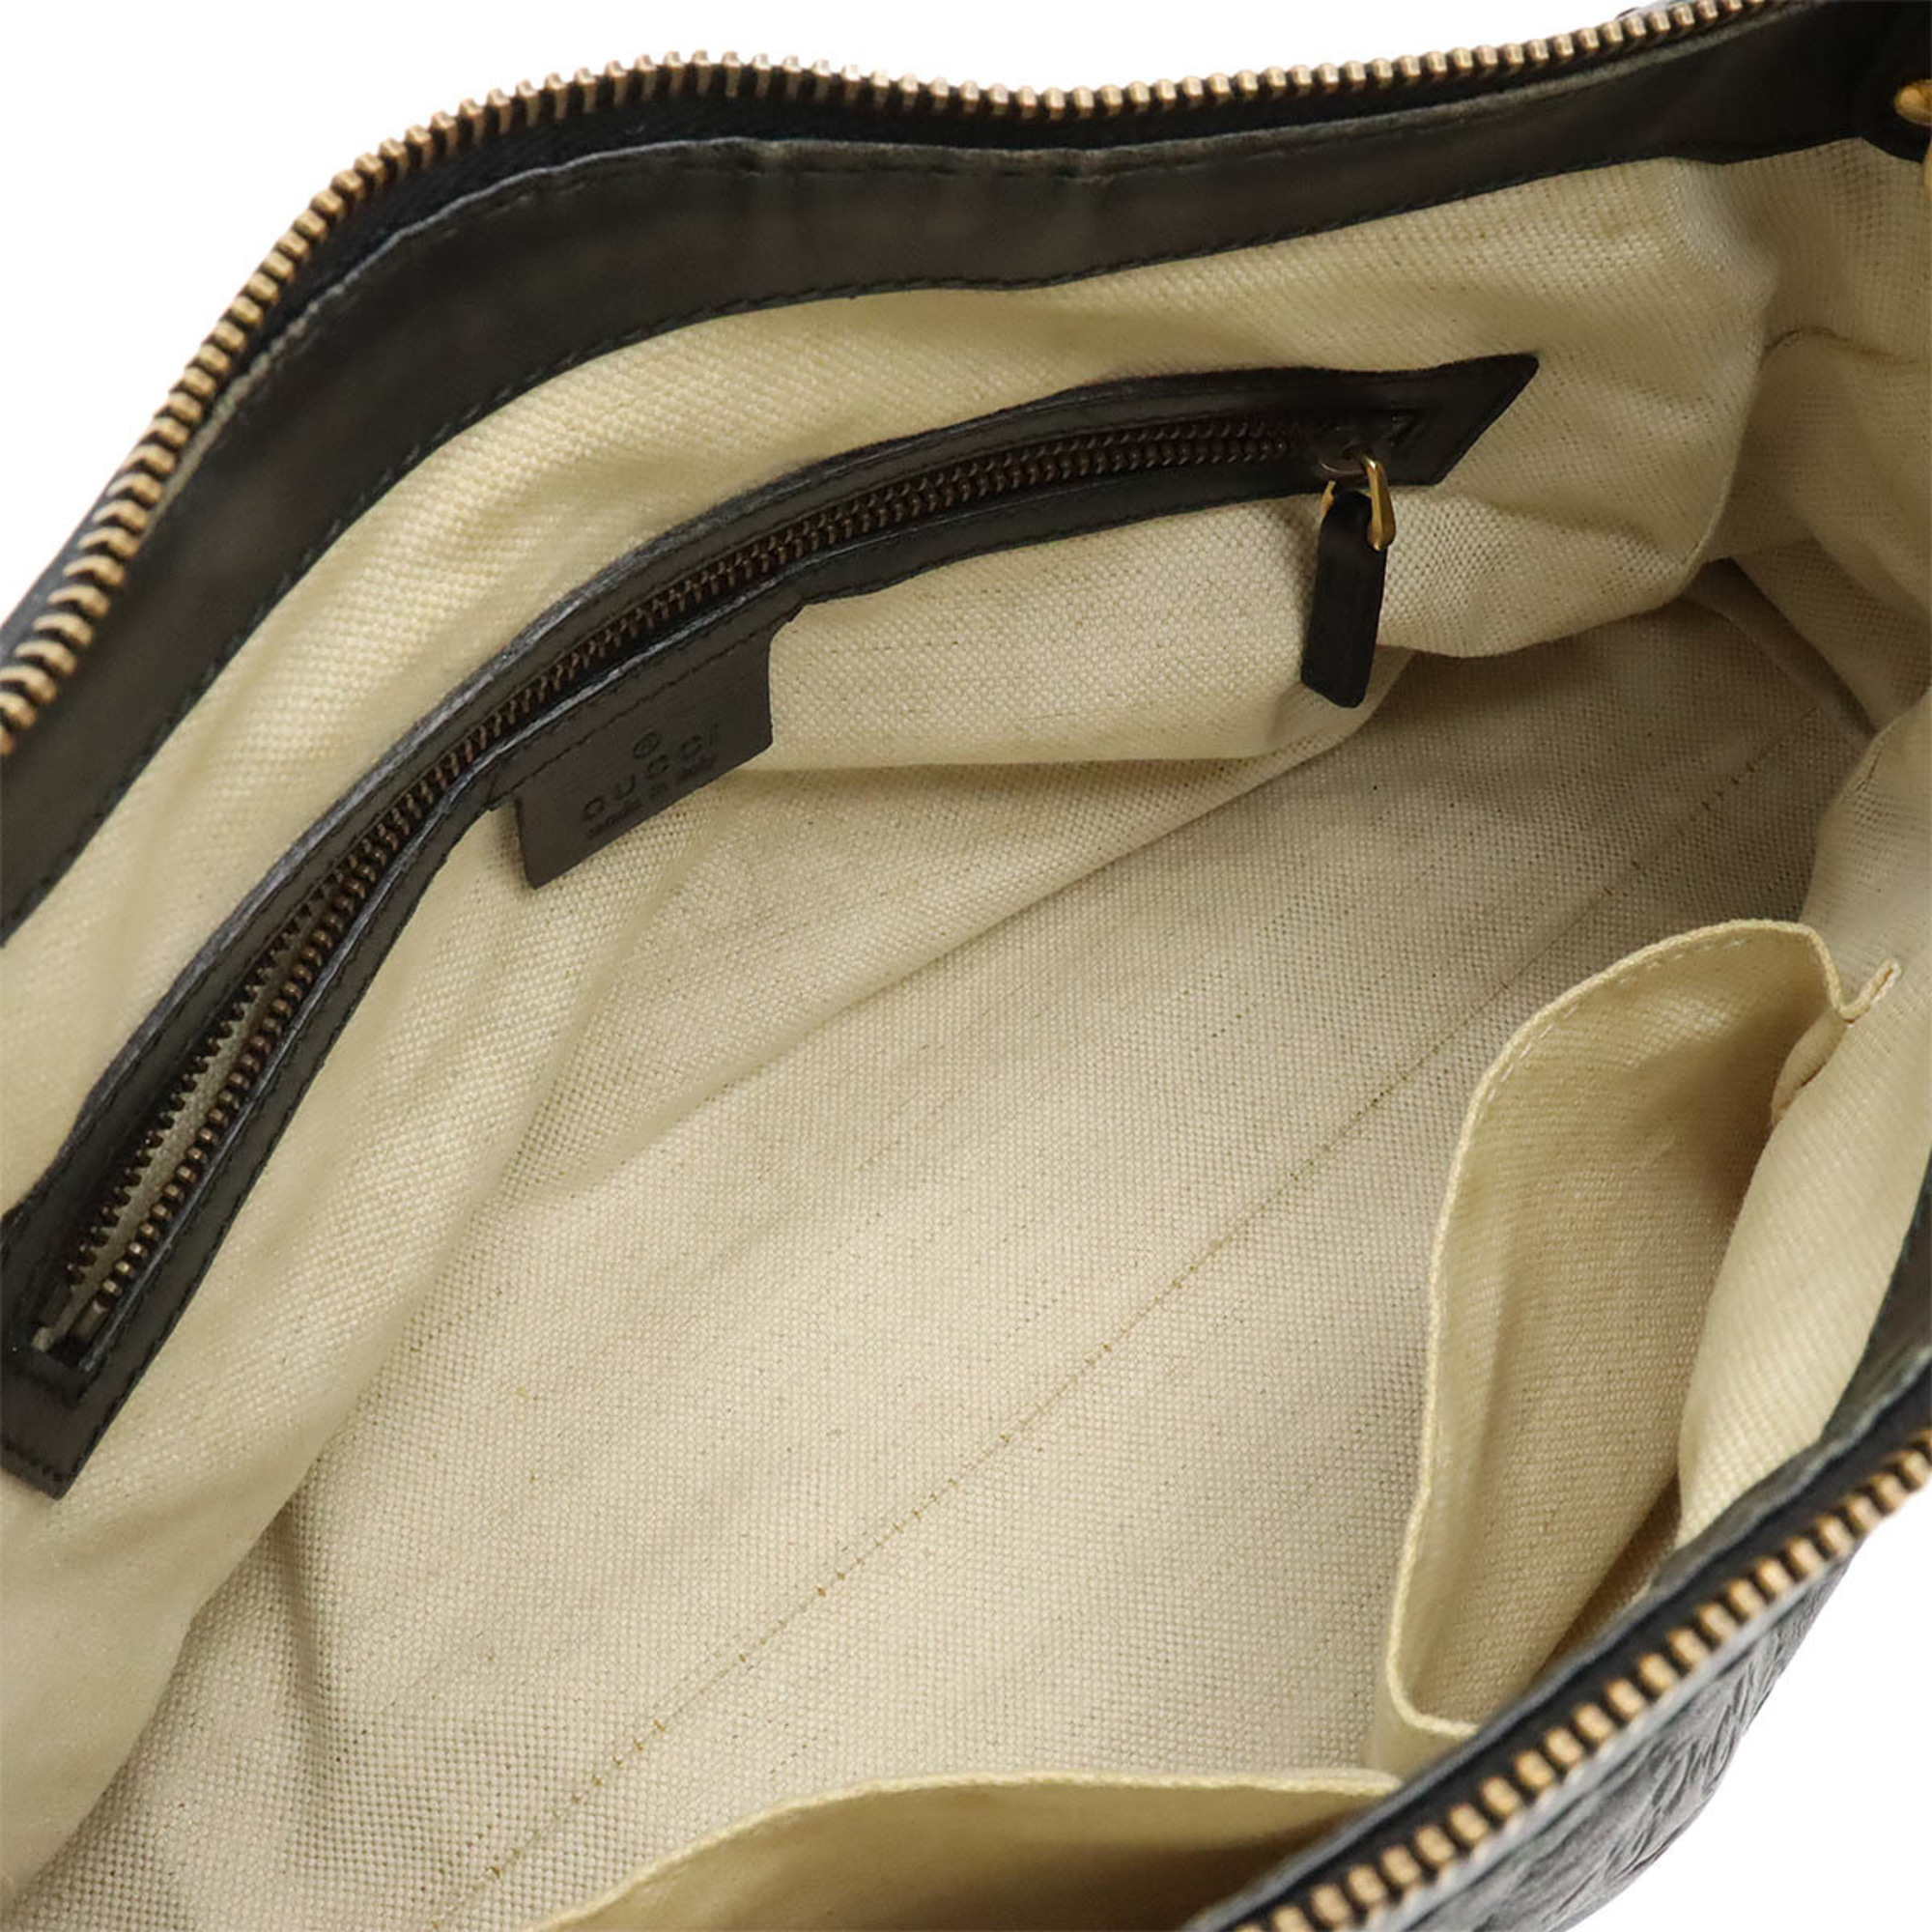 GUCCI Guccissima Scarlet Studs Shoulder Bag Leather Black 282298